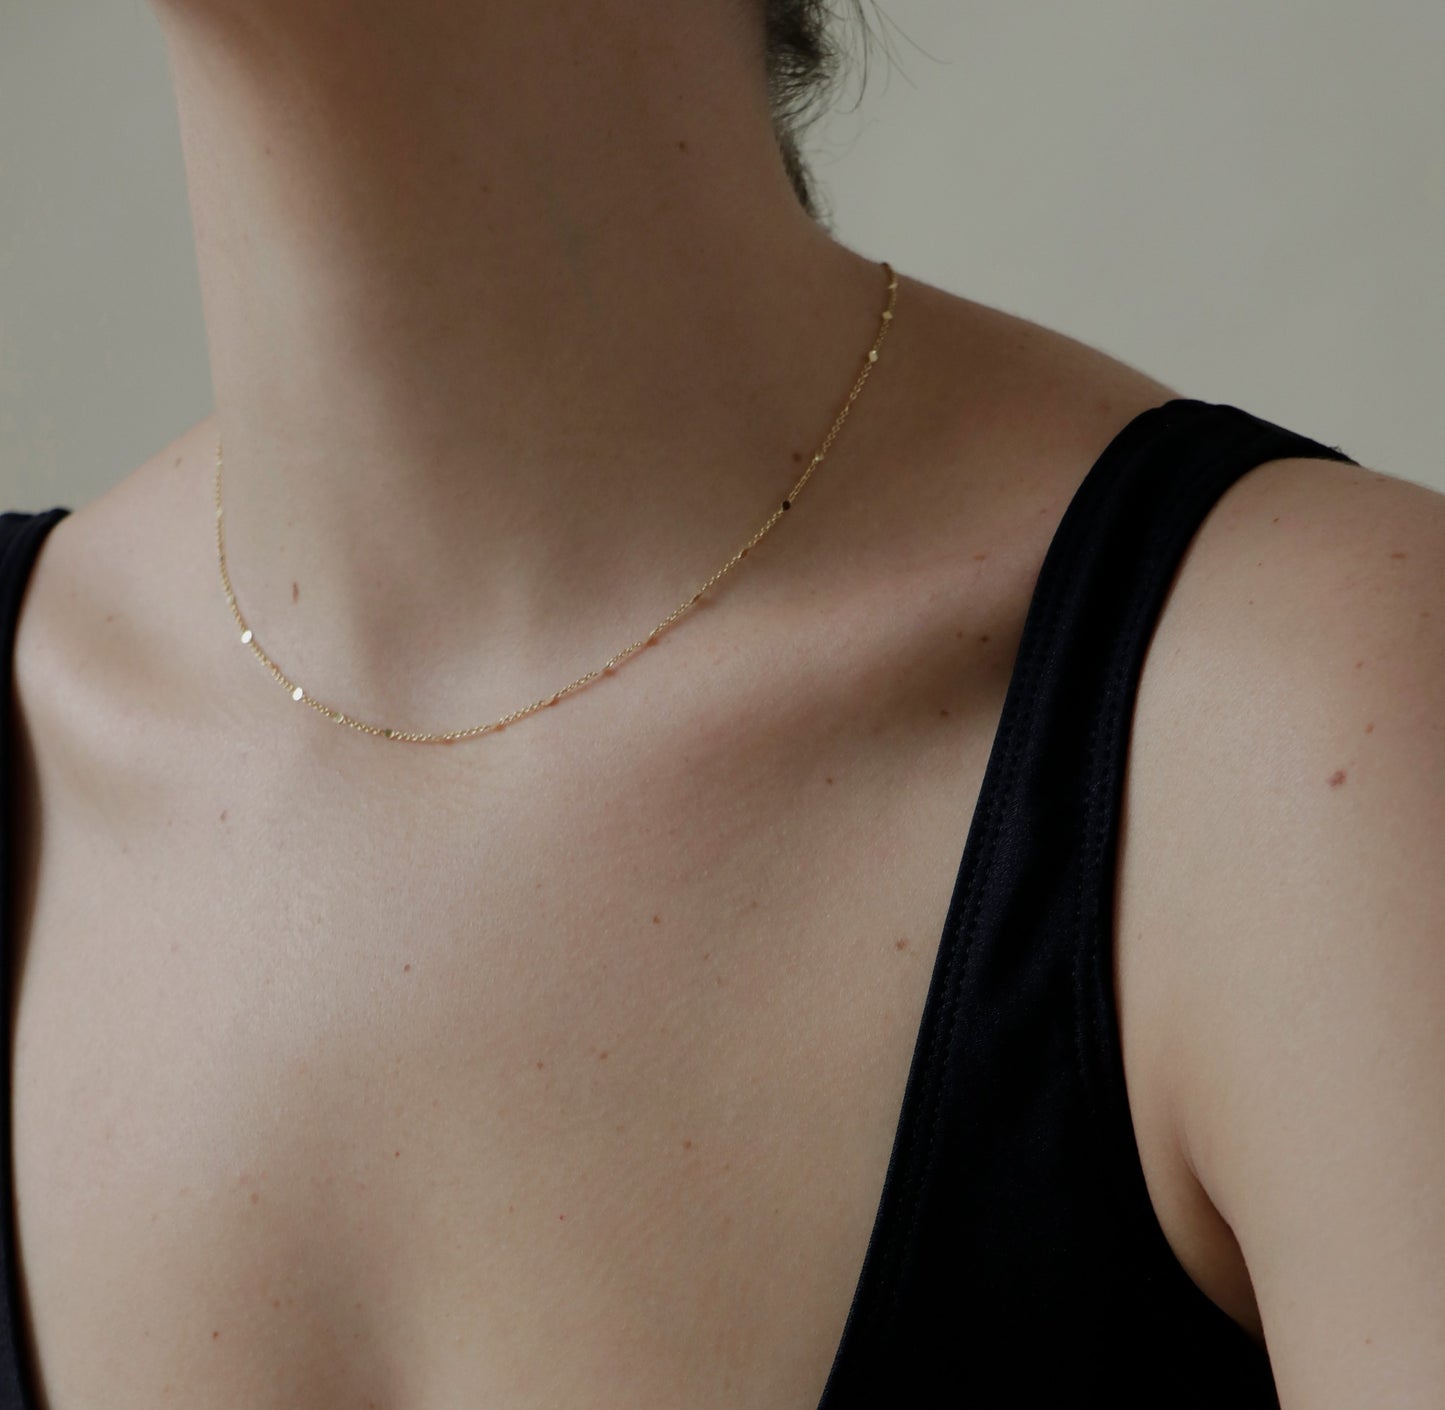 Nuestras /necklace